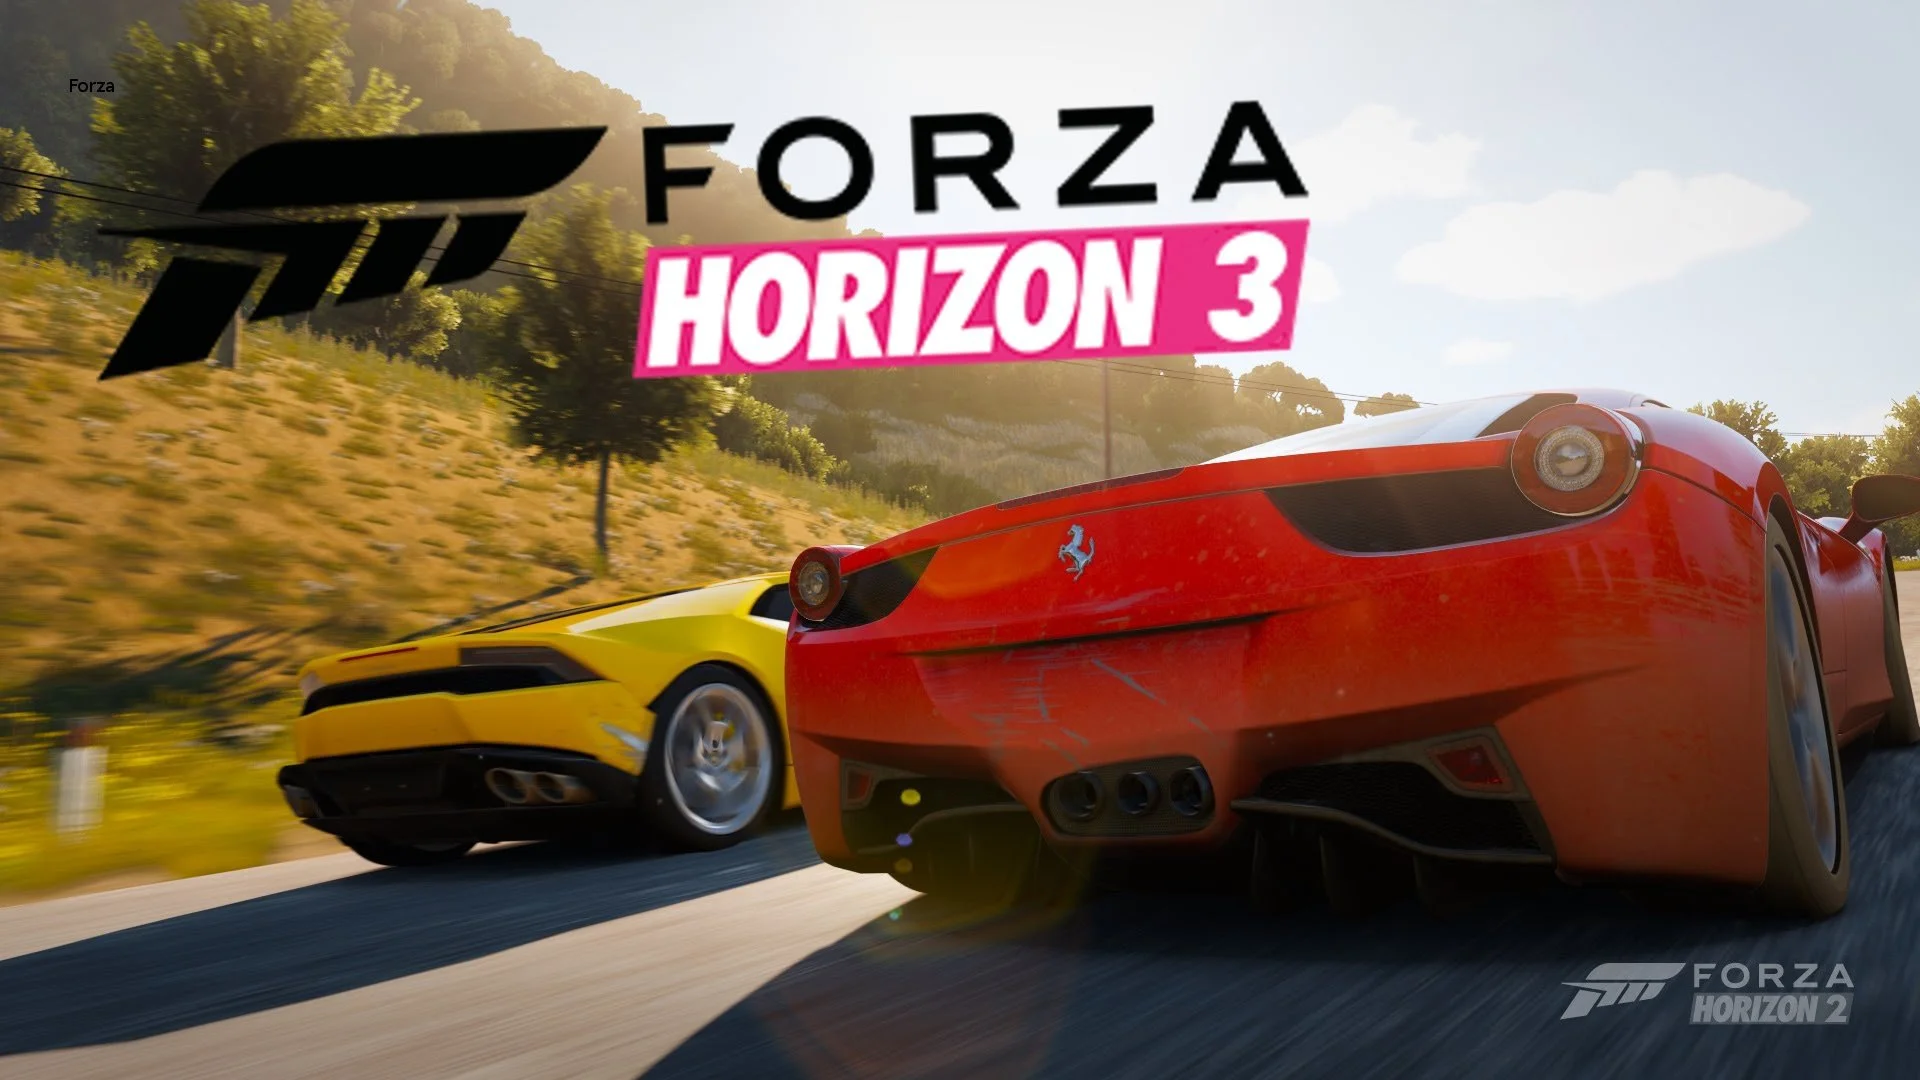 Форза Хоризон 3. Форза на ПС 3. Forza Horizon 3 обложка. Forza Horizon 5 Постер. Forza ps